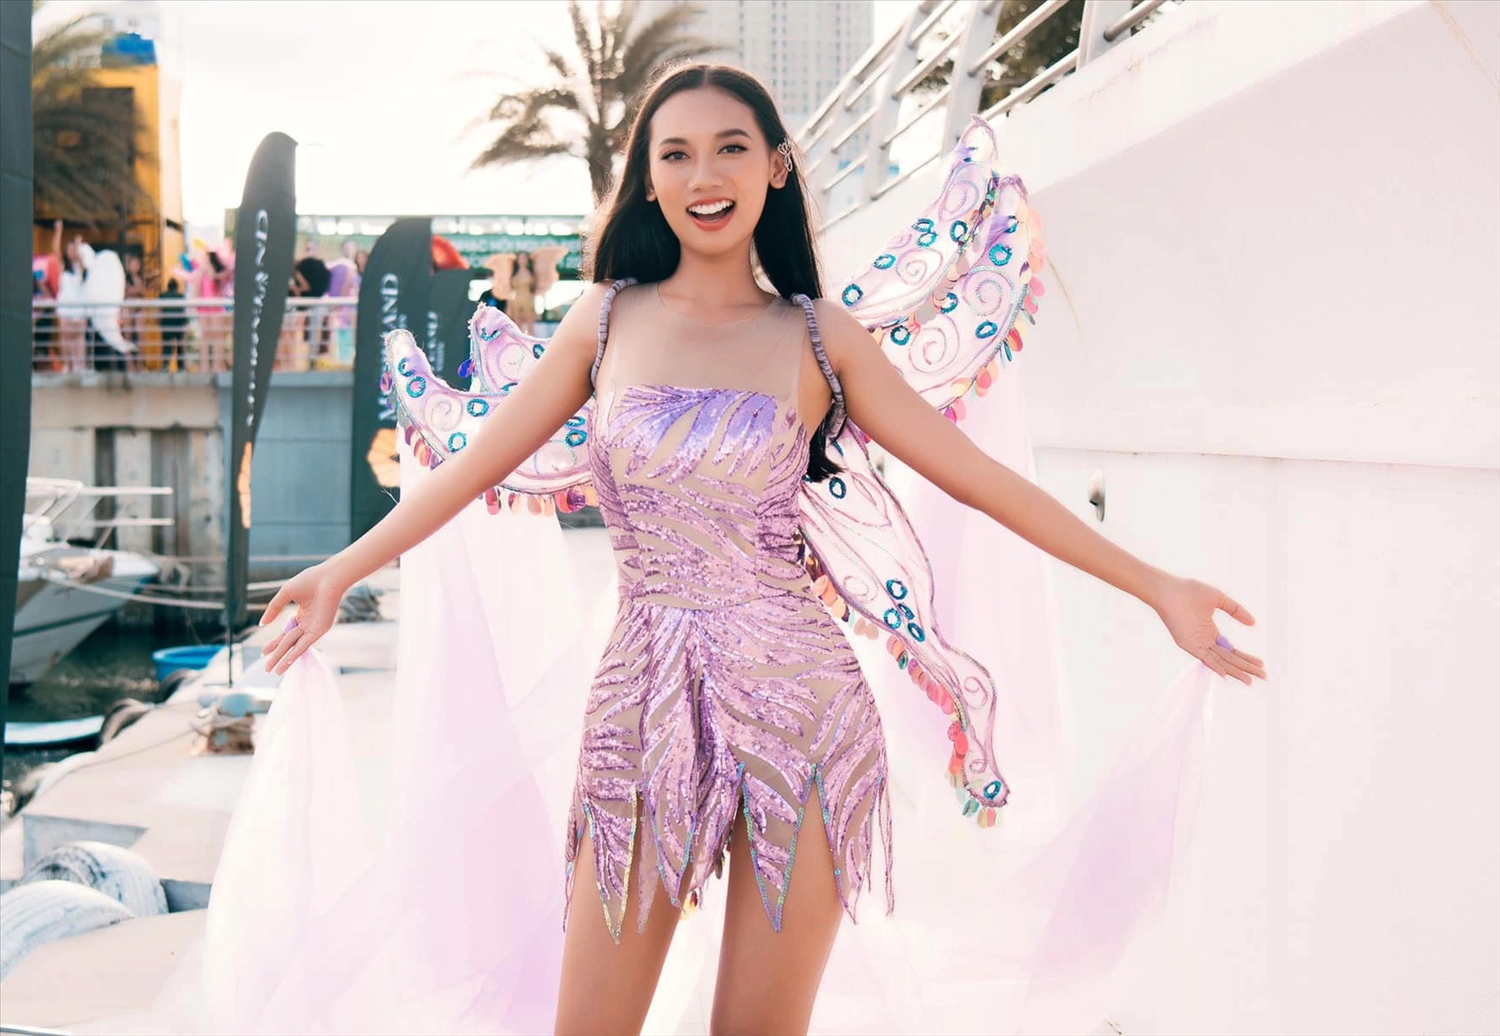 Hoàng An trình diễn trang phục phong cách carnival trong khuôn khổ cuộc thi Hoa hậu Thế giới Việt Nam 2022